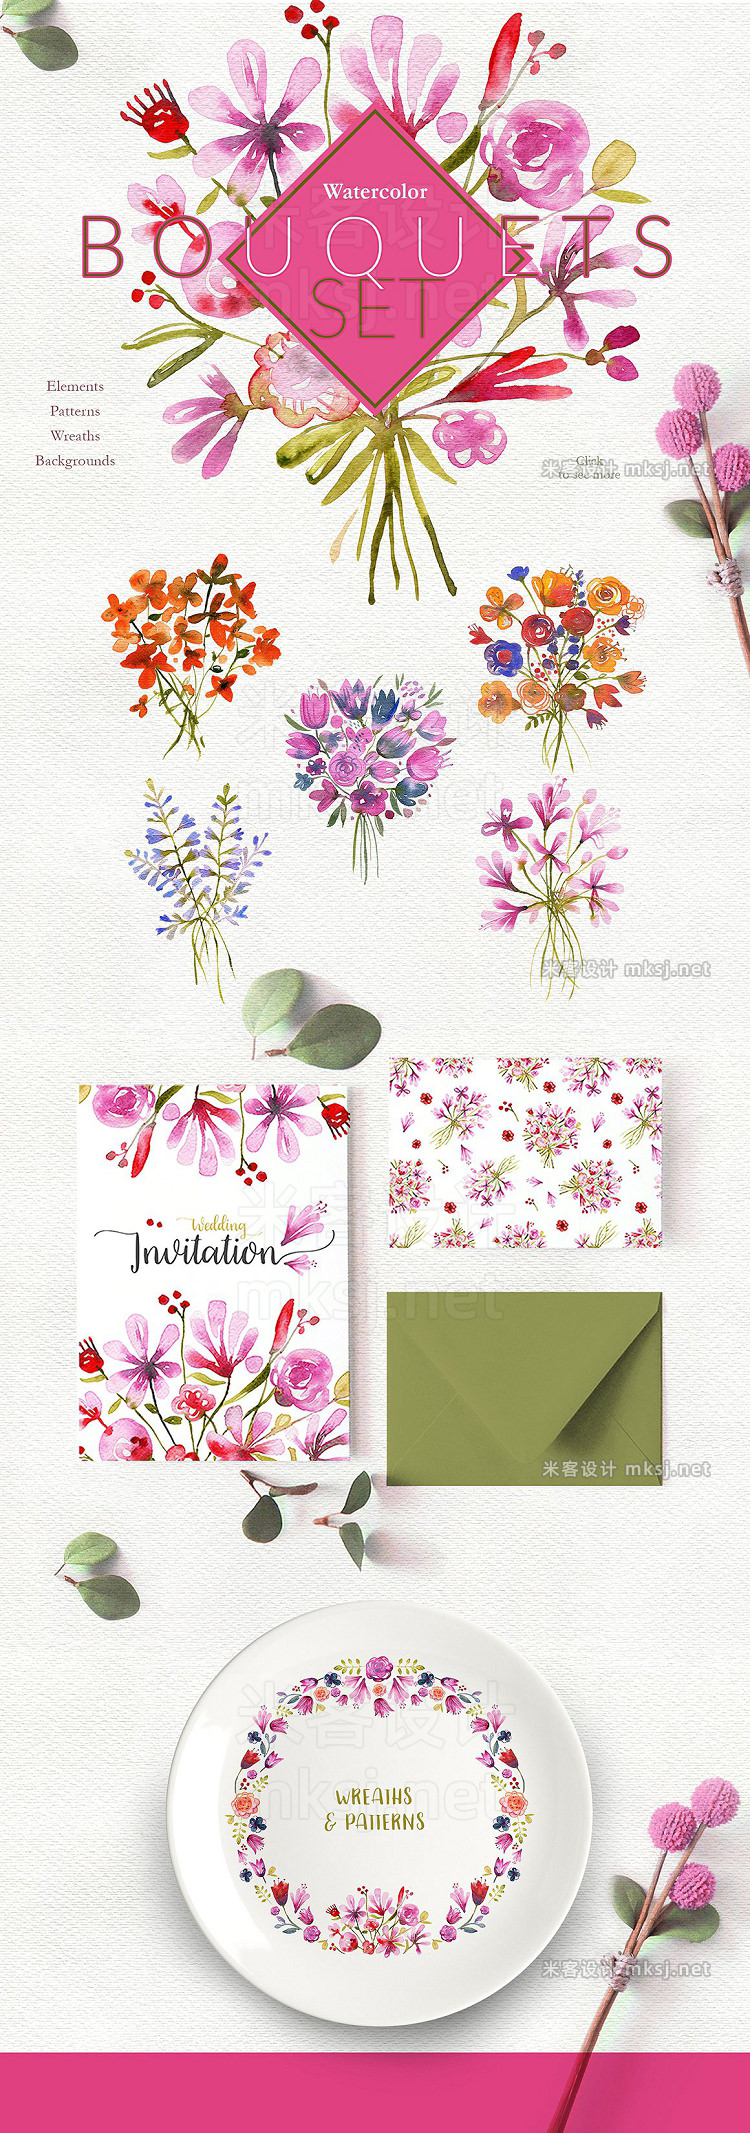 png素材 Watercolor Bouquets Set